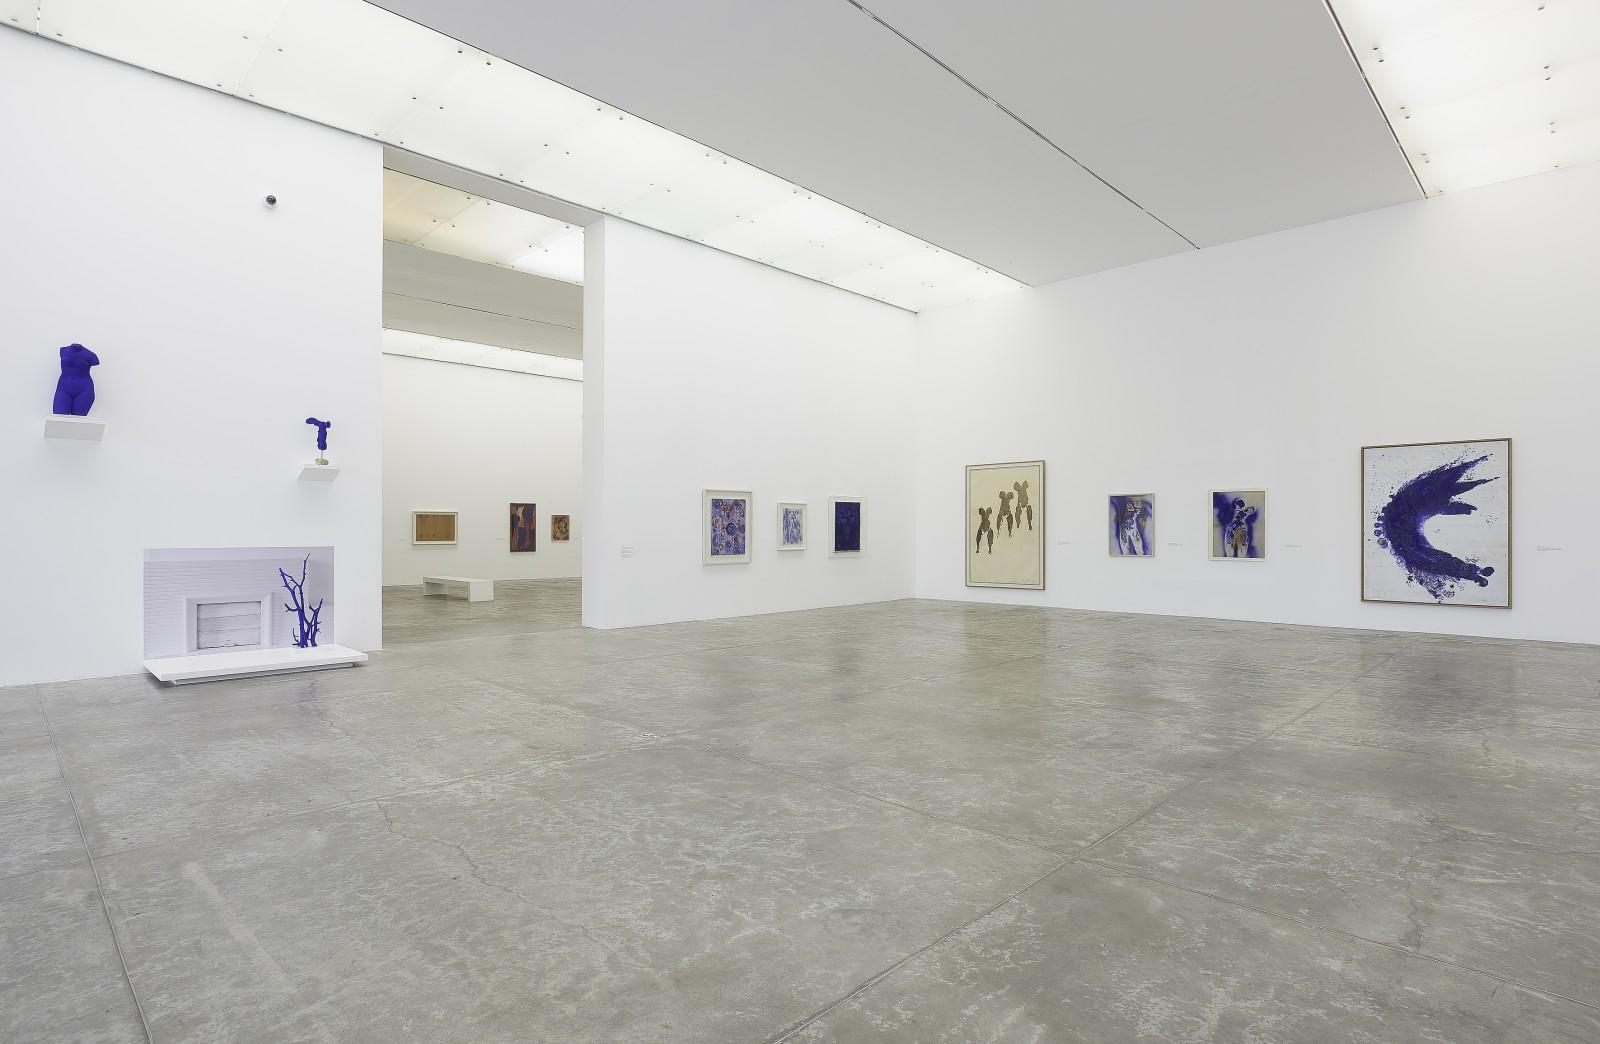 View of the exhibition, "Yves Klein", MUAC - Museo Universitario de Arte Contemporáneo, 2017